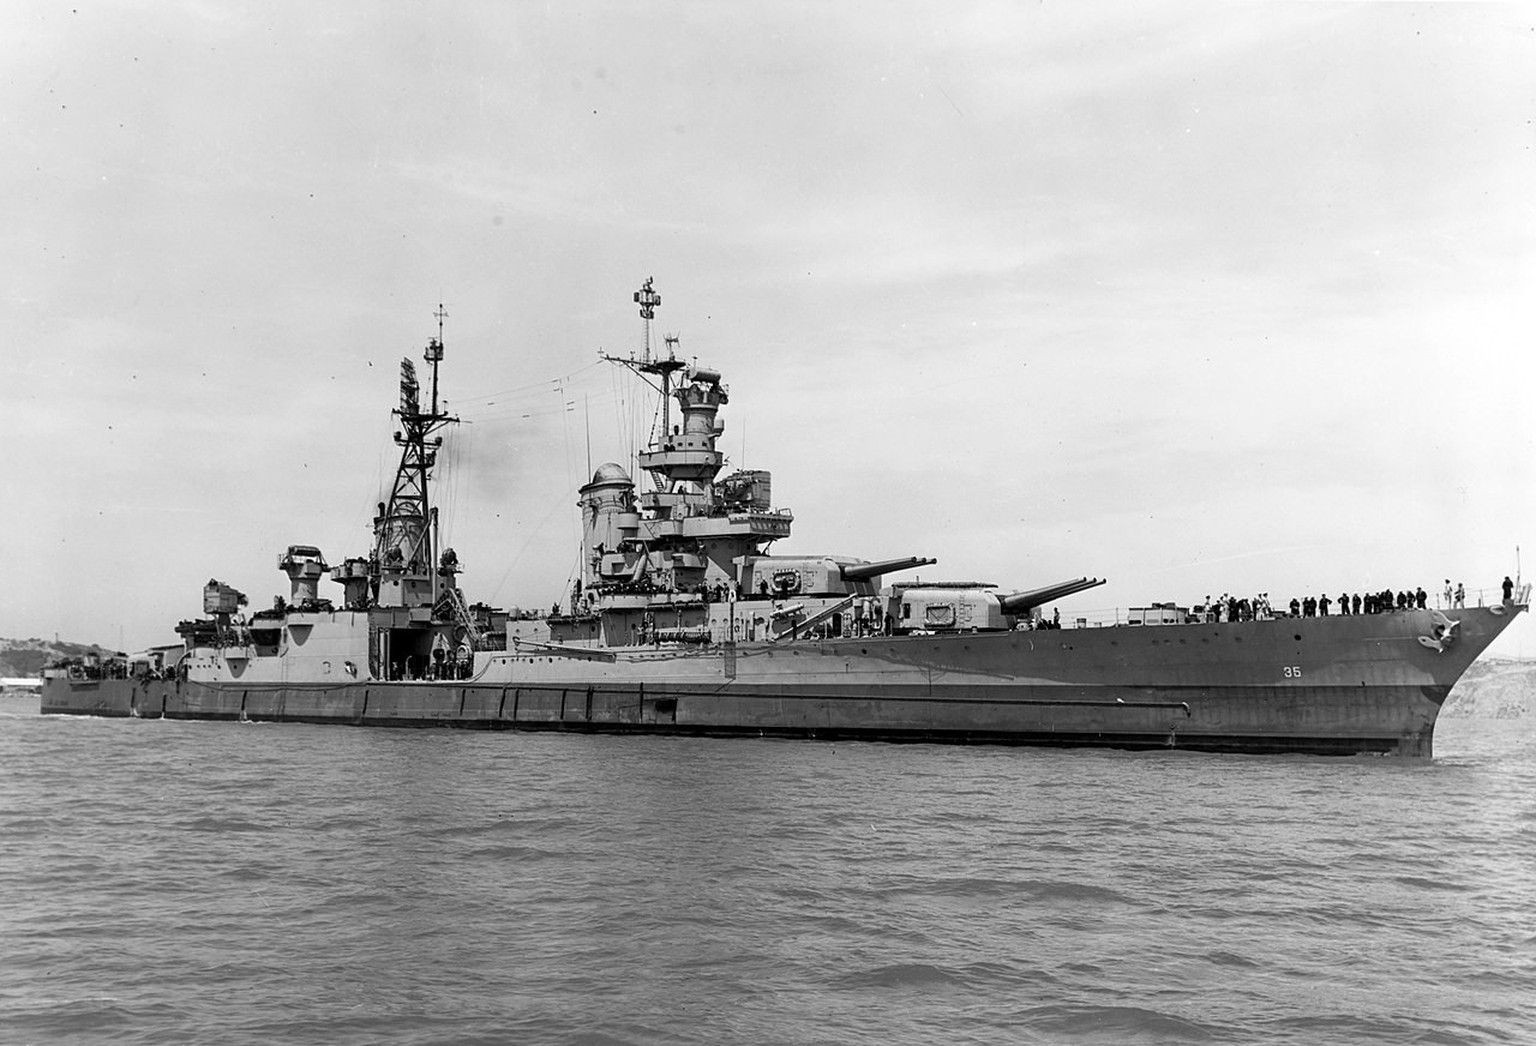 Die USS Indianapolis am 10. Juli 1945 vor der Küste Kaliforniens - 20 Tage vor der Versenkung. 
https://de.wikipedia.org/wiki/USS_Indianapolis_(CA-35)#/media/Datei:USS_Indianapolis_(CA-35)_off_the_Mar ...